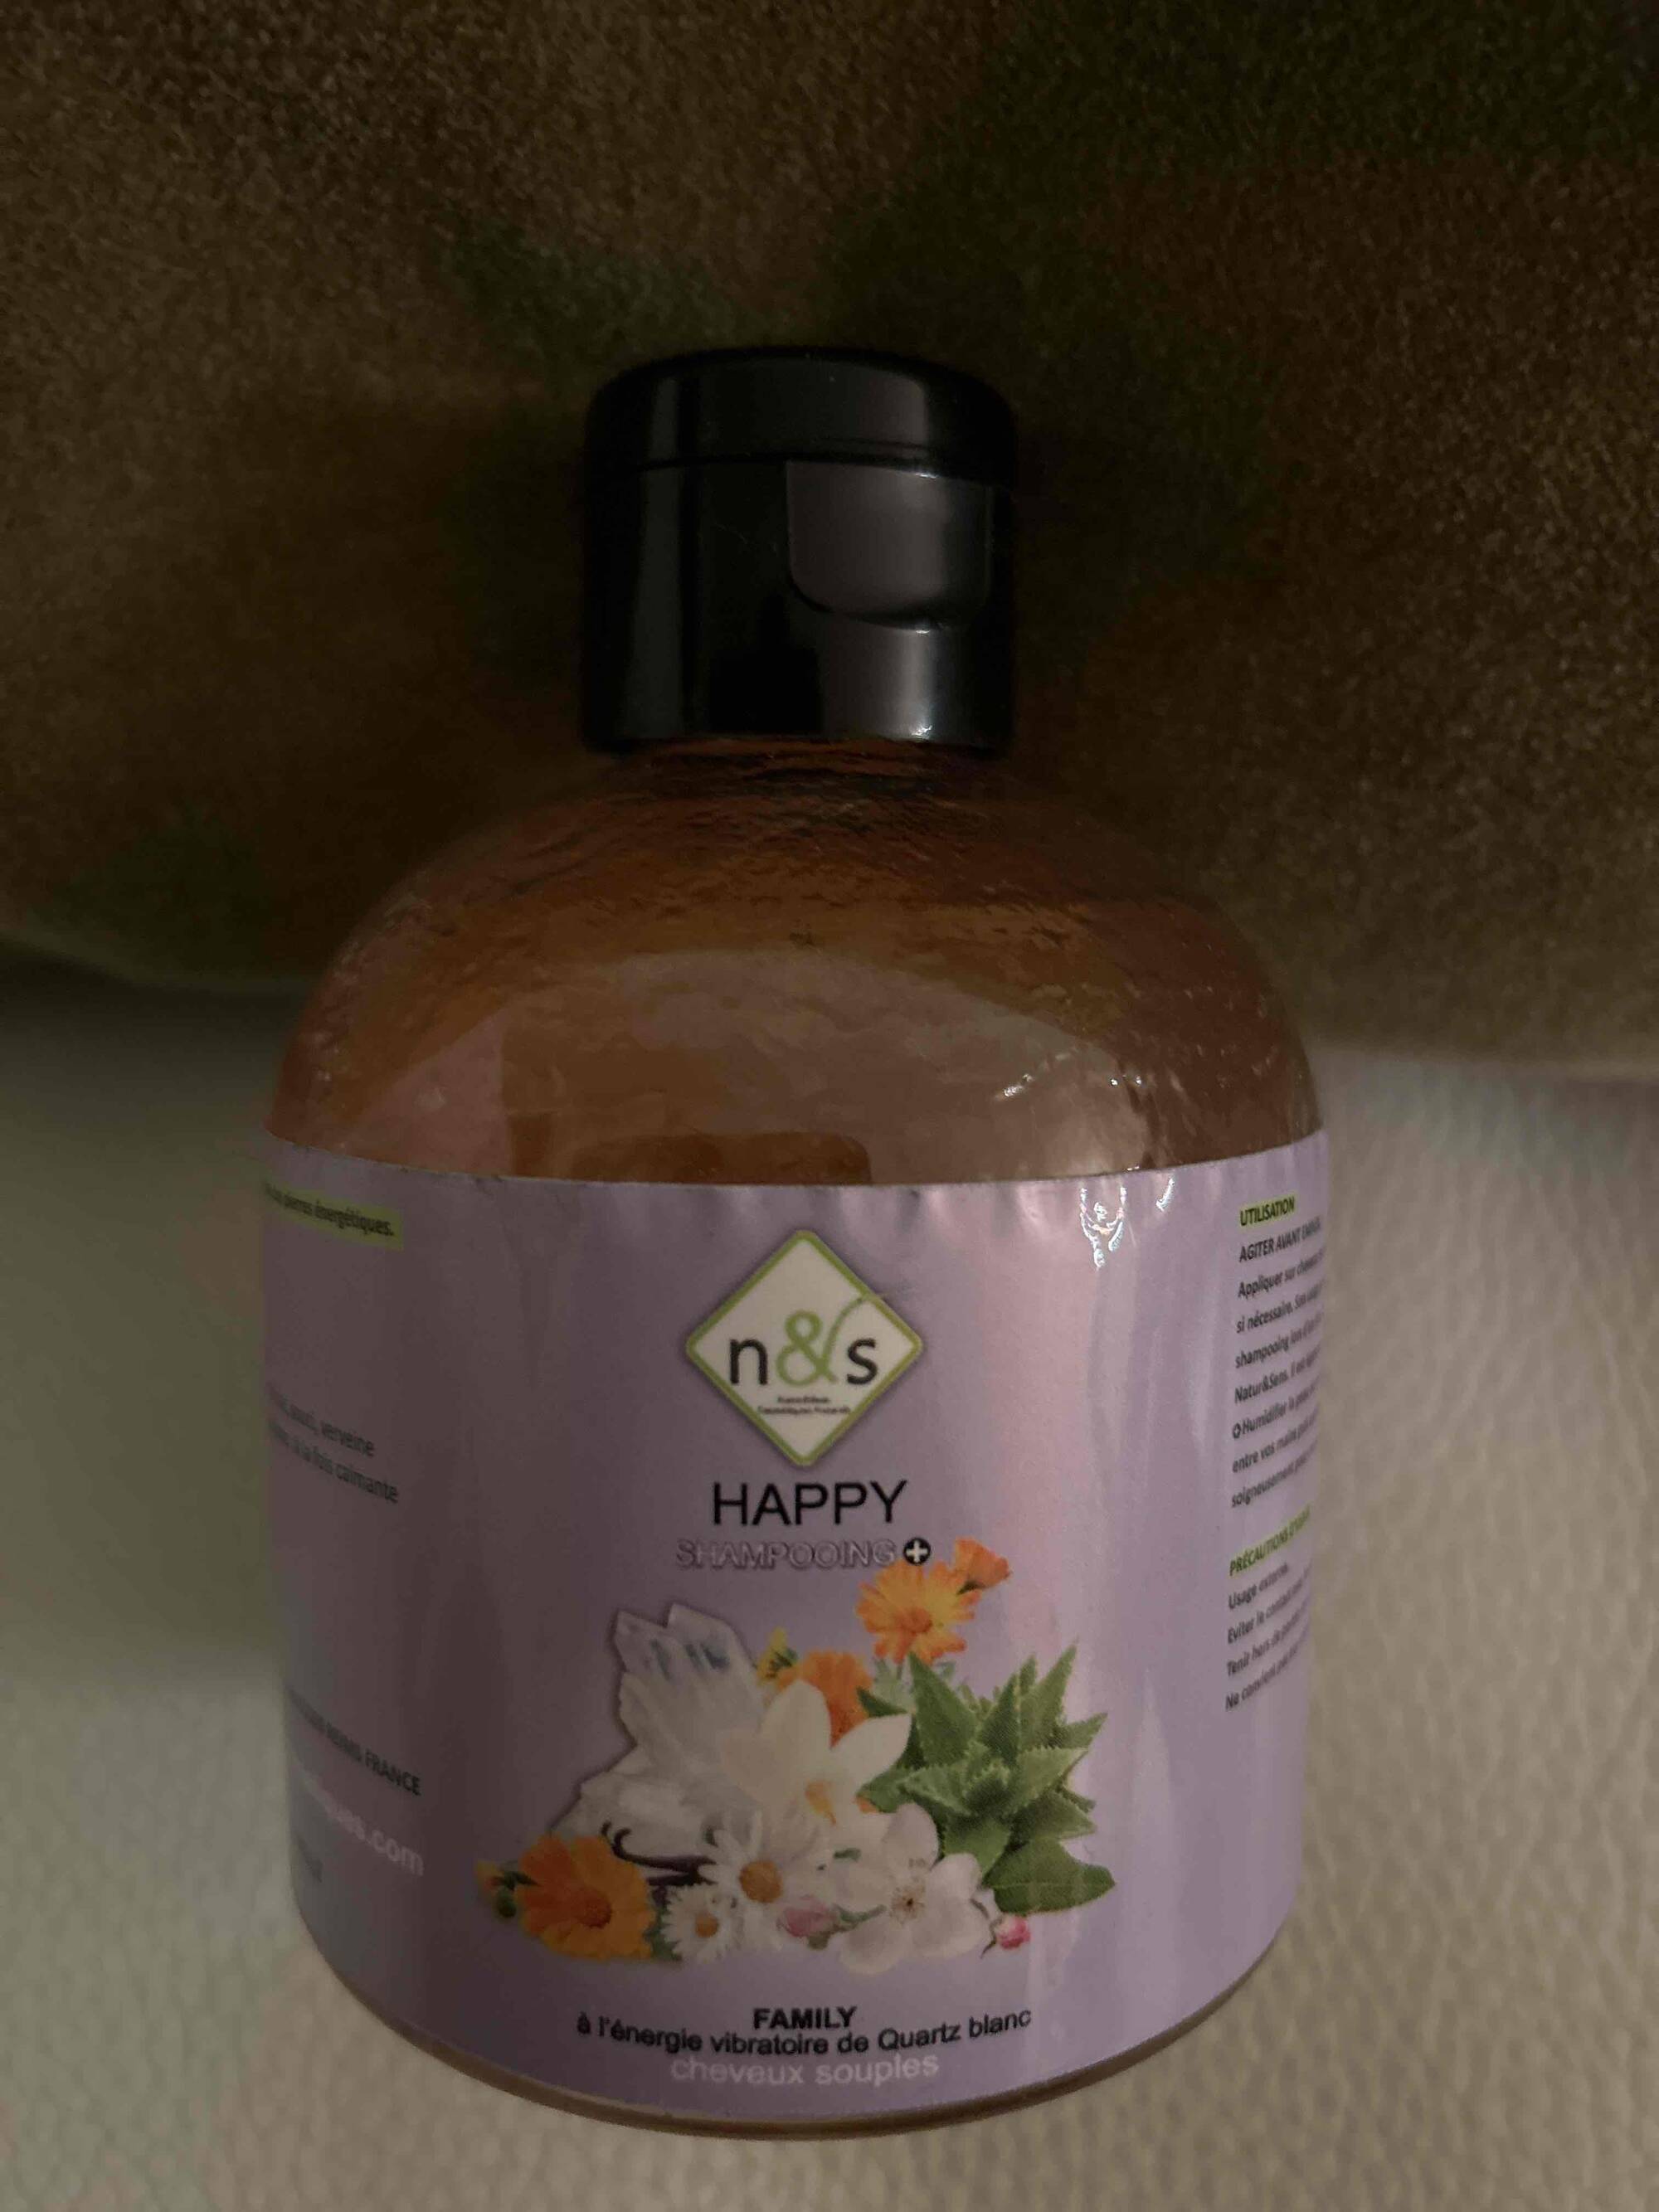 NS - Happy shampooing family 